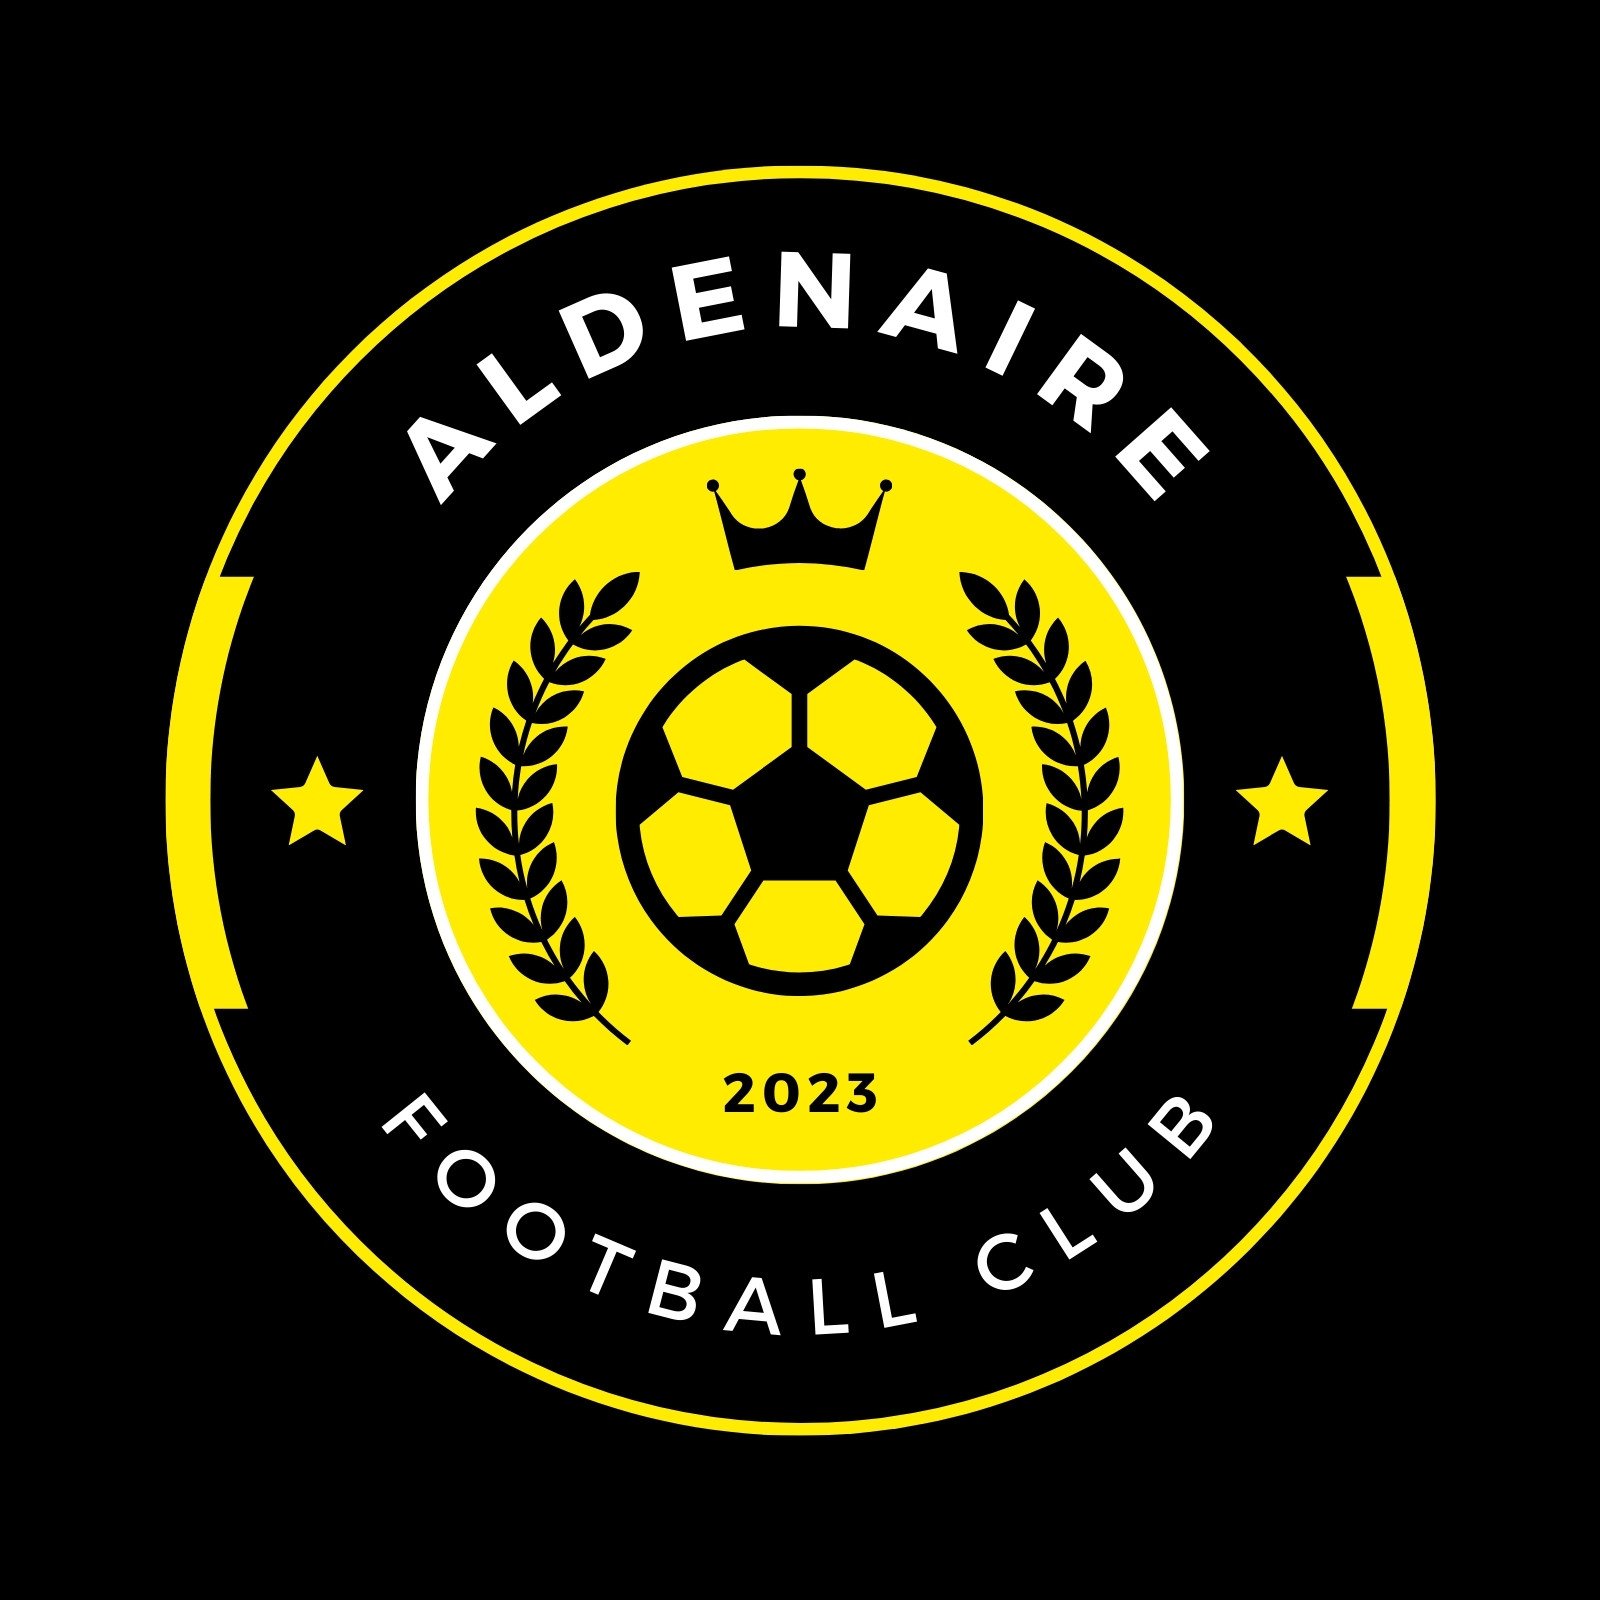 football logo designer